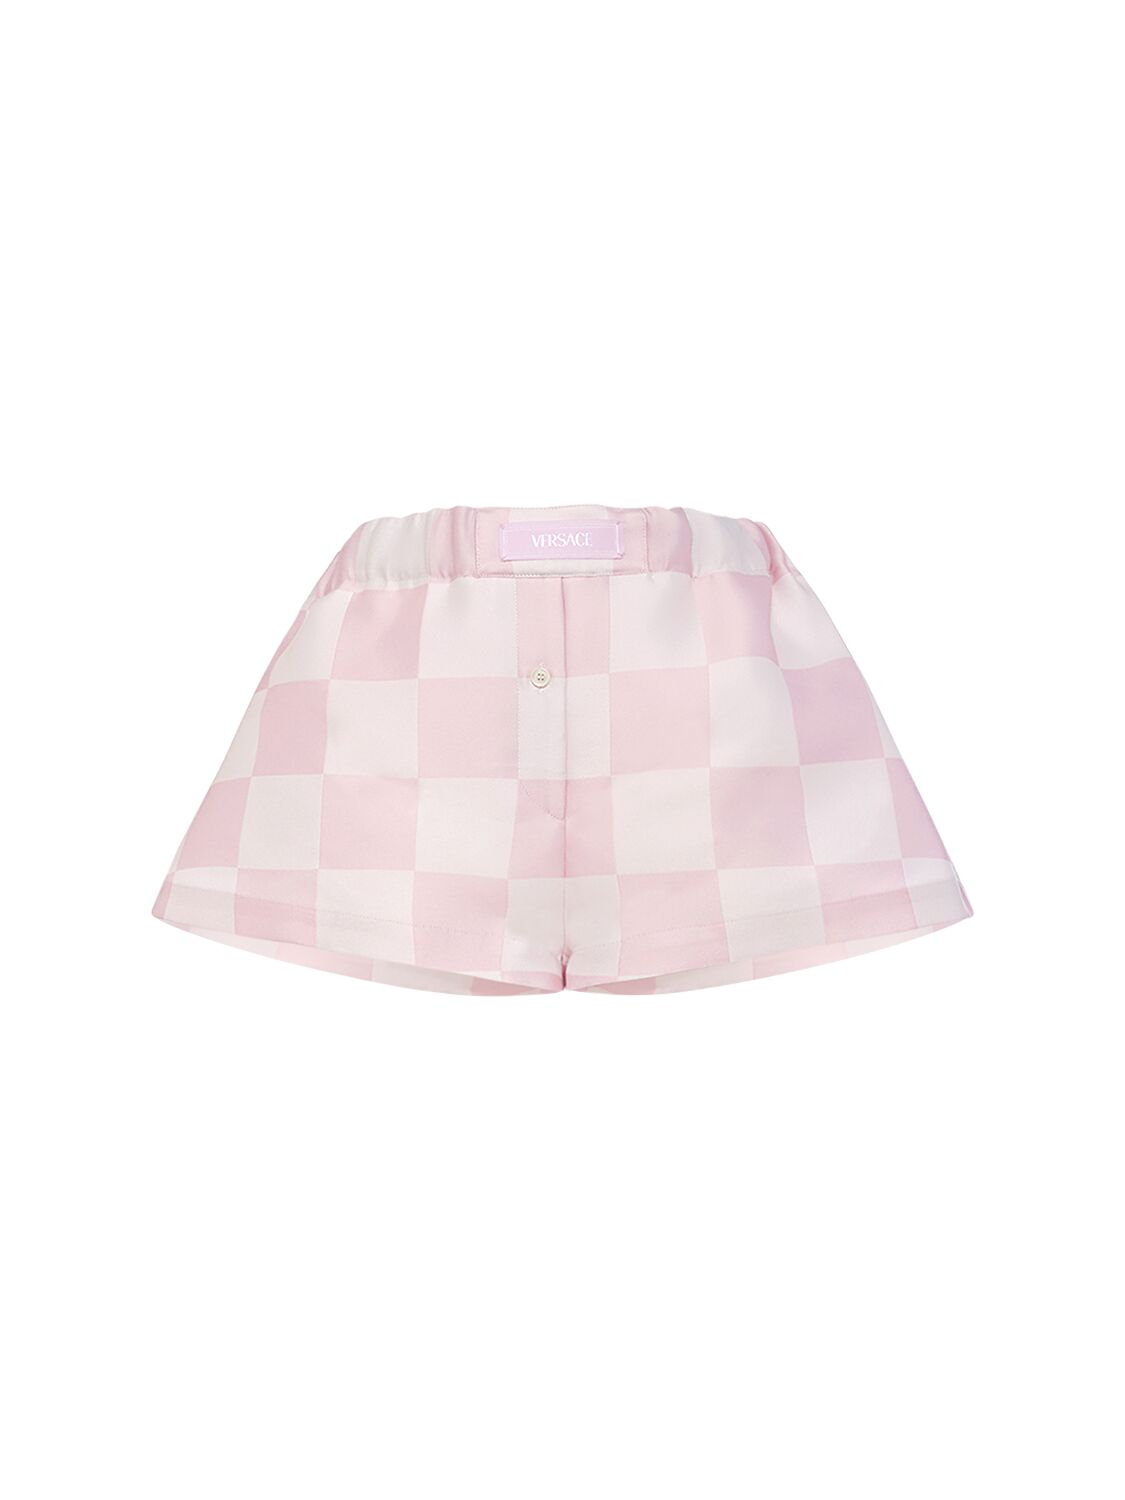 Versace Big Damier Silk Blend Duchesse Shorts In Pink